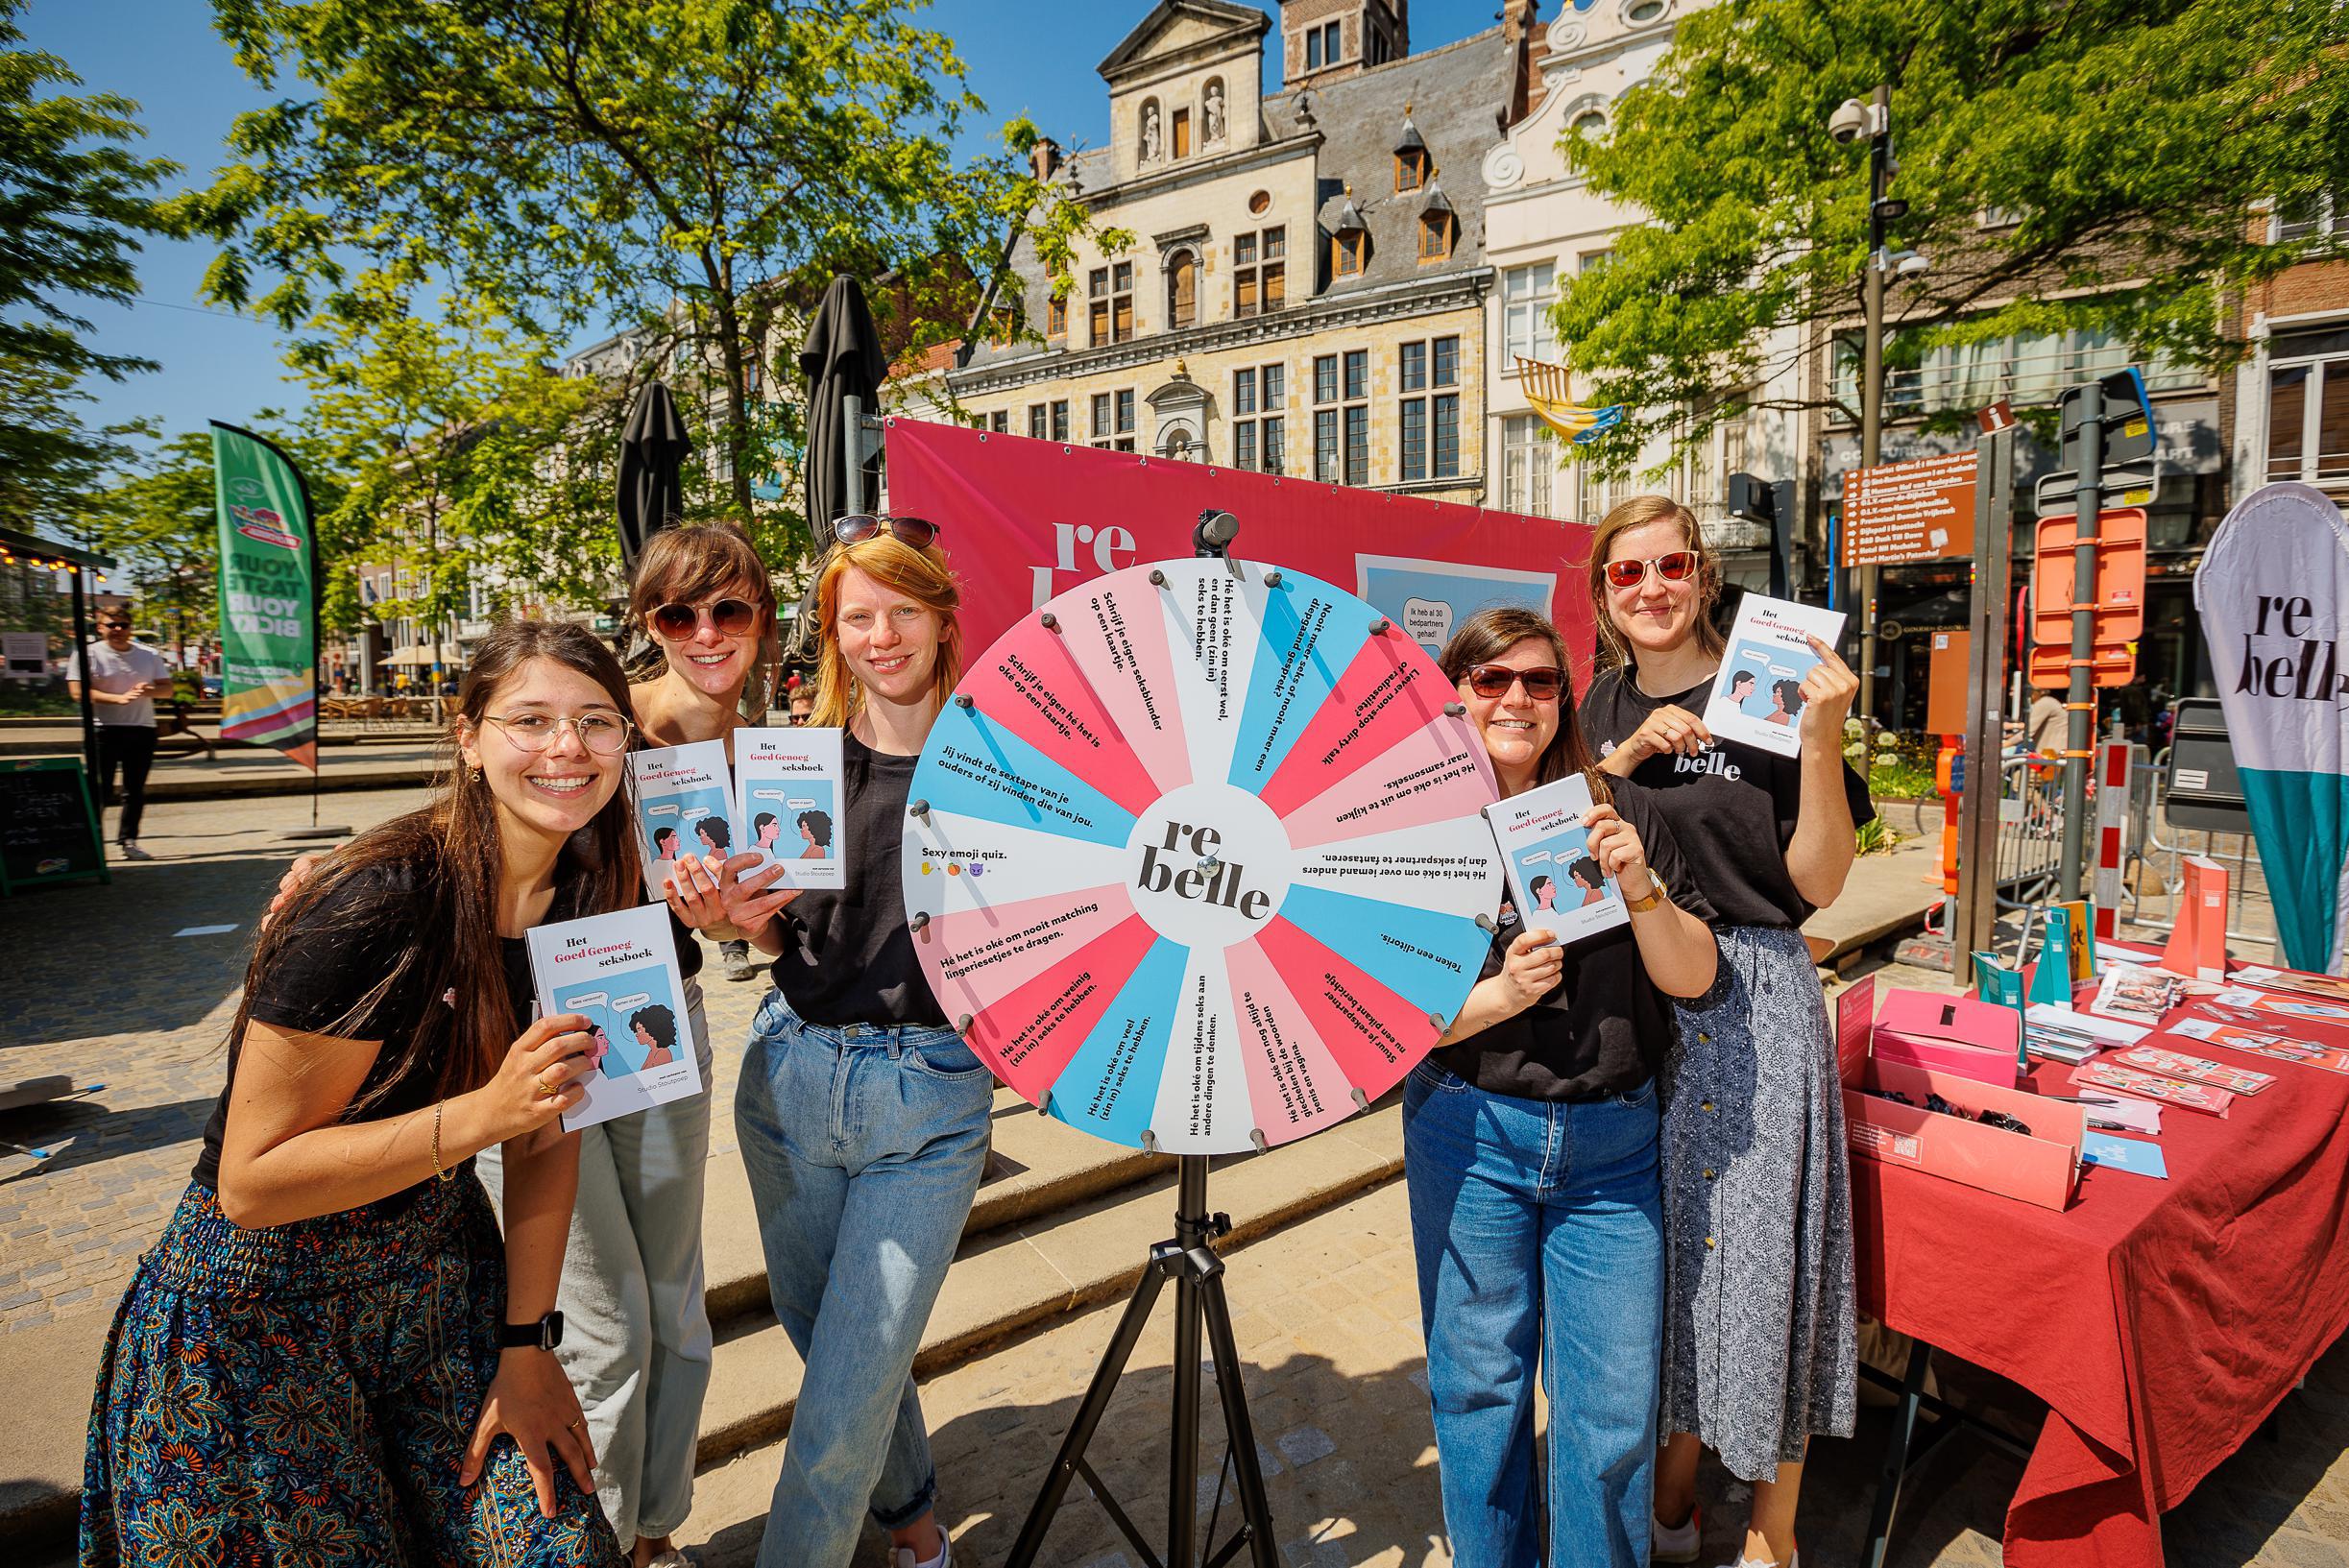 Rebelle lanceert boek om taboes of stigmas rond seks te doorbreken “Komaf maken met druk die vrouwen voelen” (Mechelen) Gazet van Antwerpen Mobile foto foto